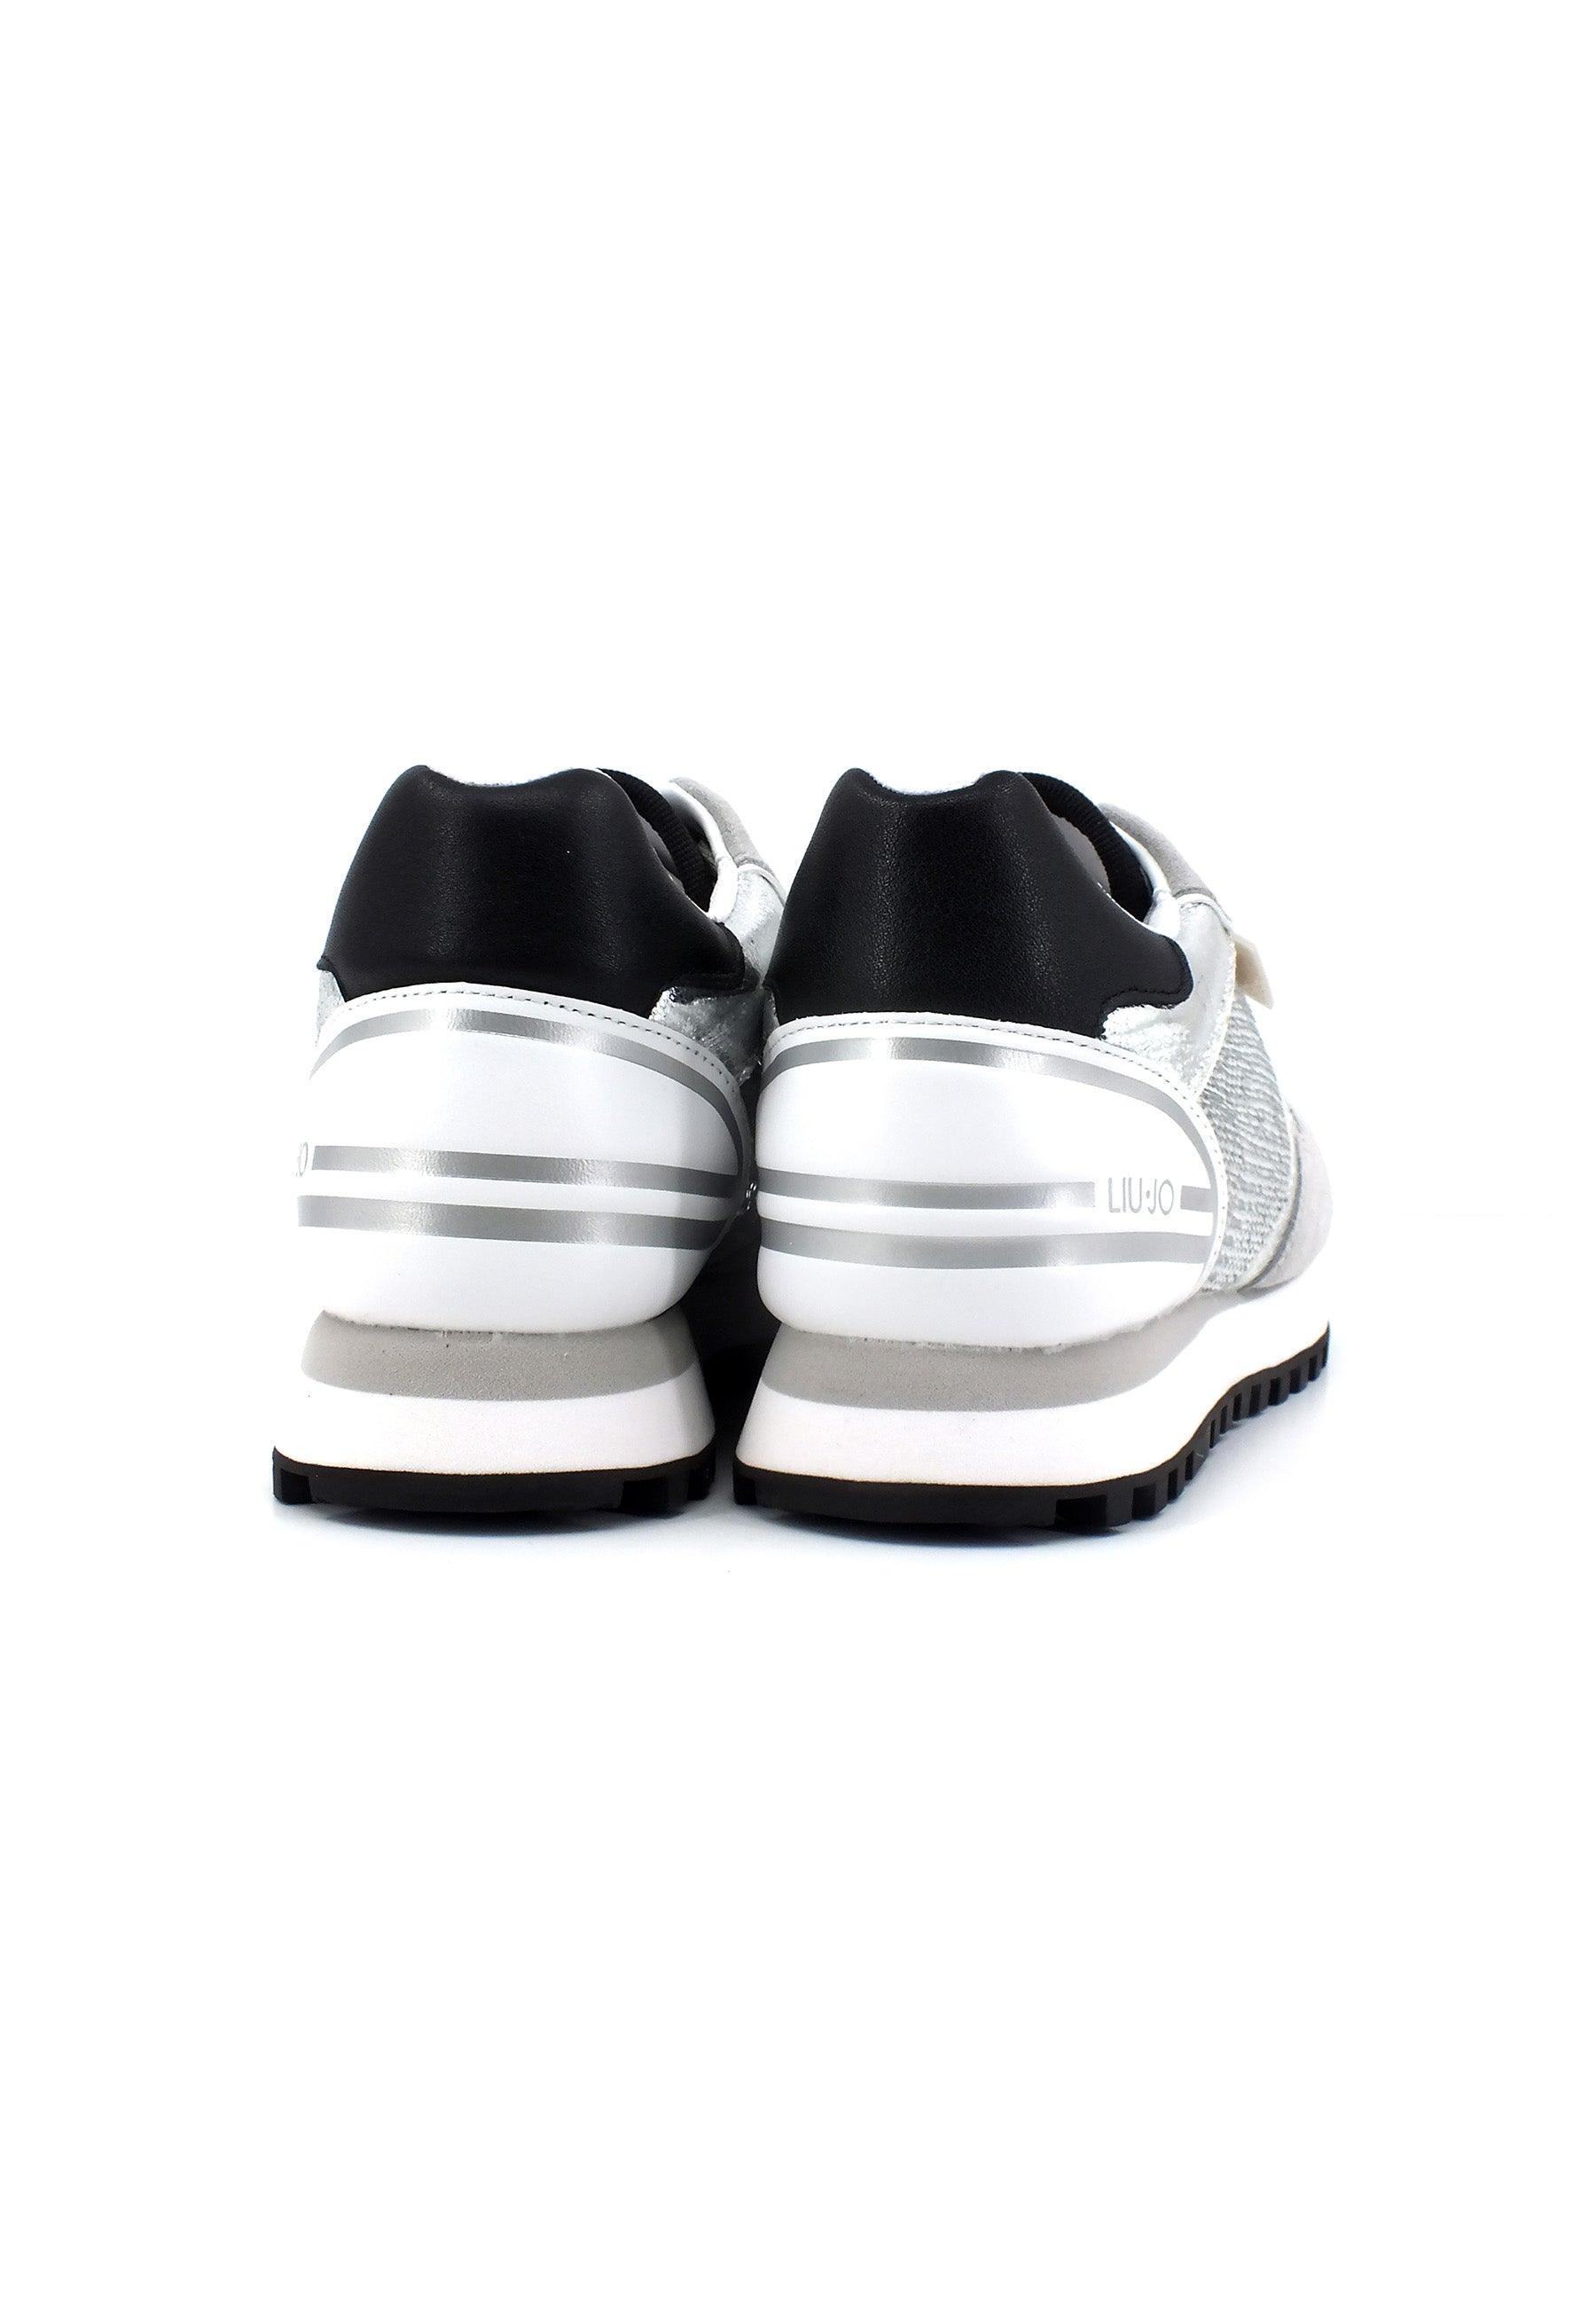 LIU JO Wonder 24 Sneaker Paillettes Donna Loft Silver BA3089PX343 - Sandrini Calzature e Abbigliamento